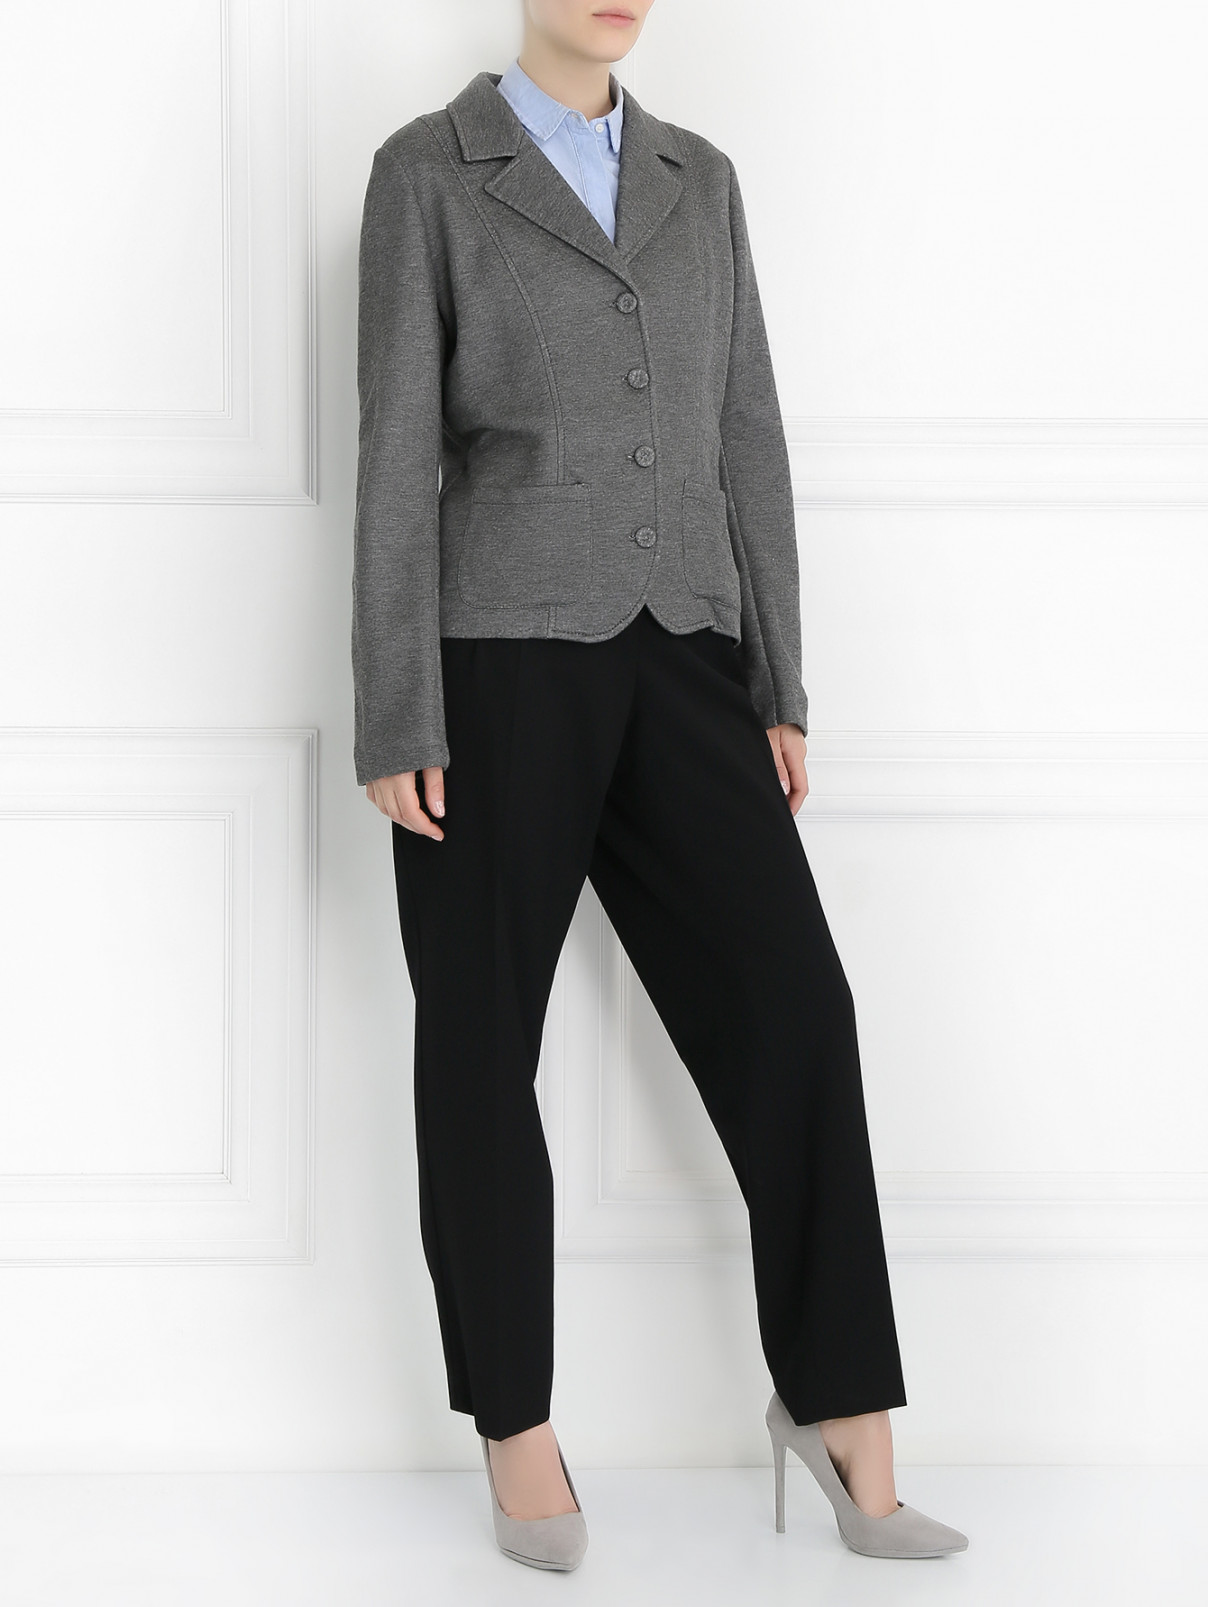 Жакет на пуговицах с двумя боковыми карманами Mariella Burani  –  Модель Общий вид  – Цвет:  Серый